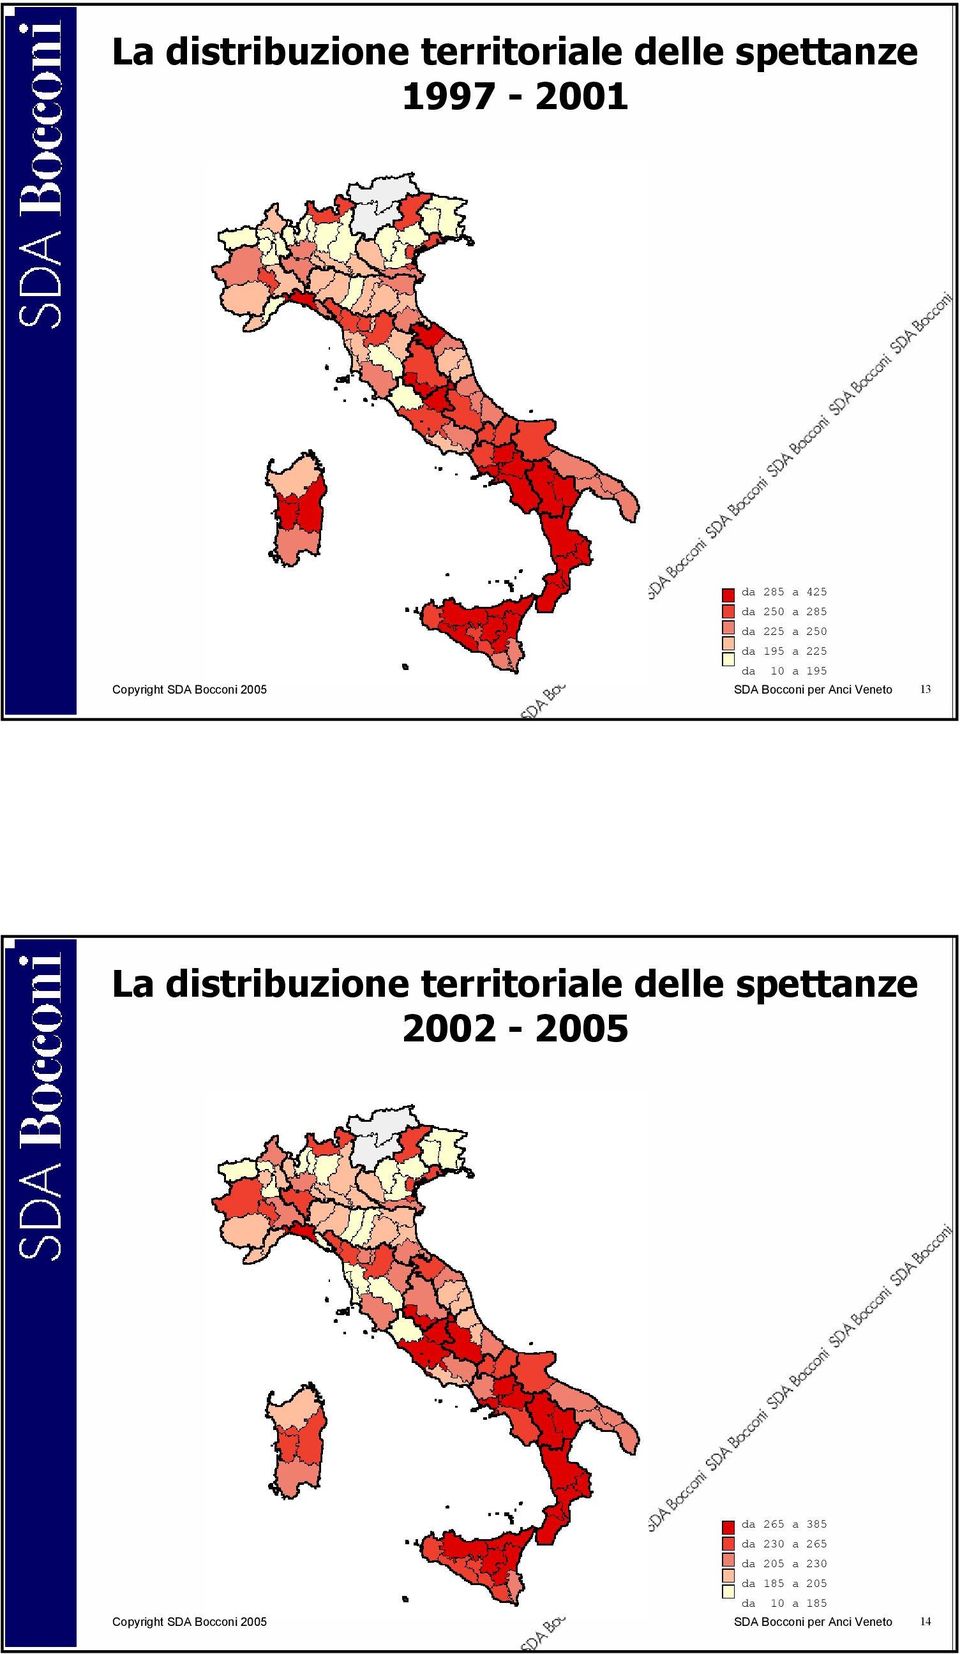 La distribuzione territoriale delle spettanze 2002-2005 da 265 a 385 da 230 a 265 da 205